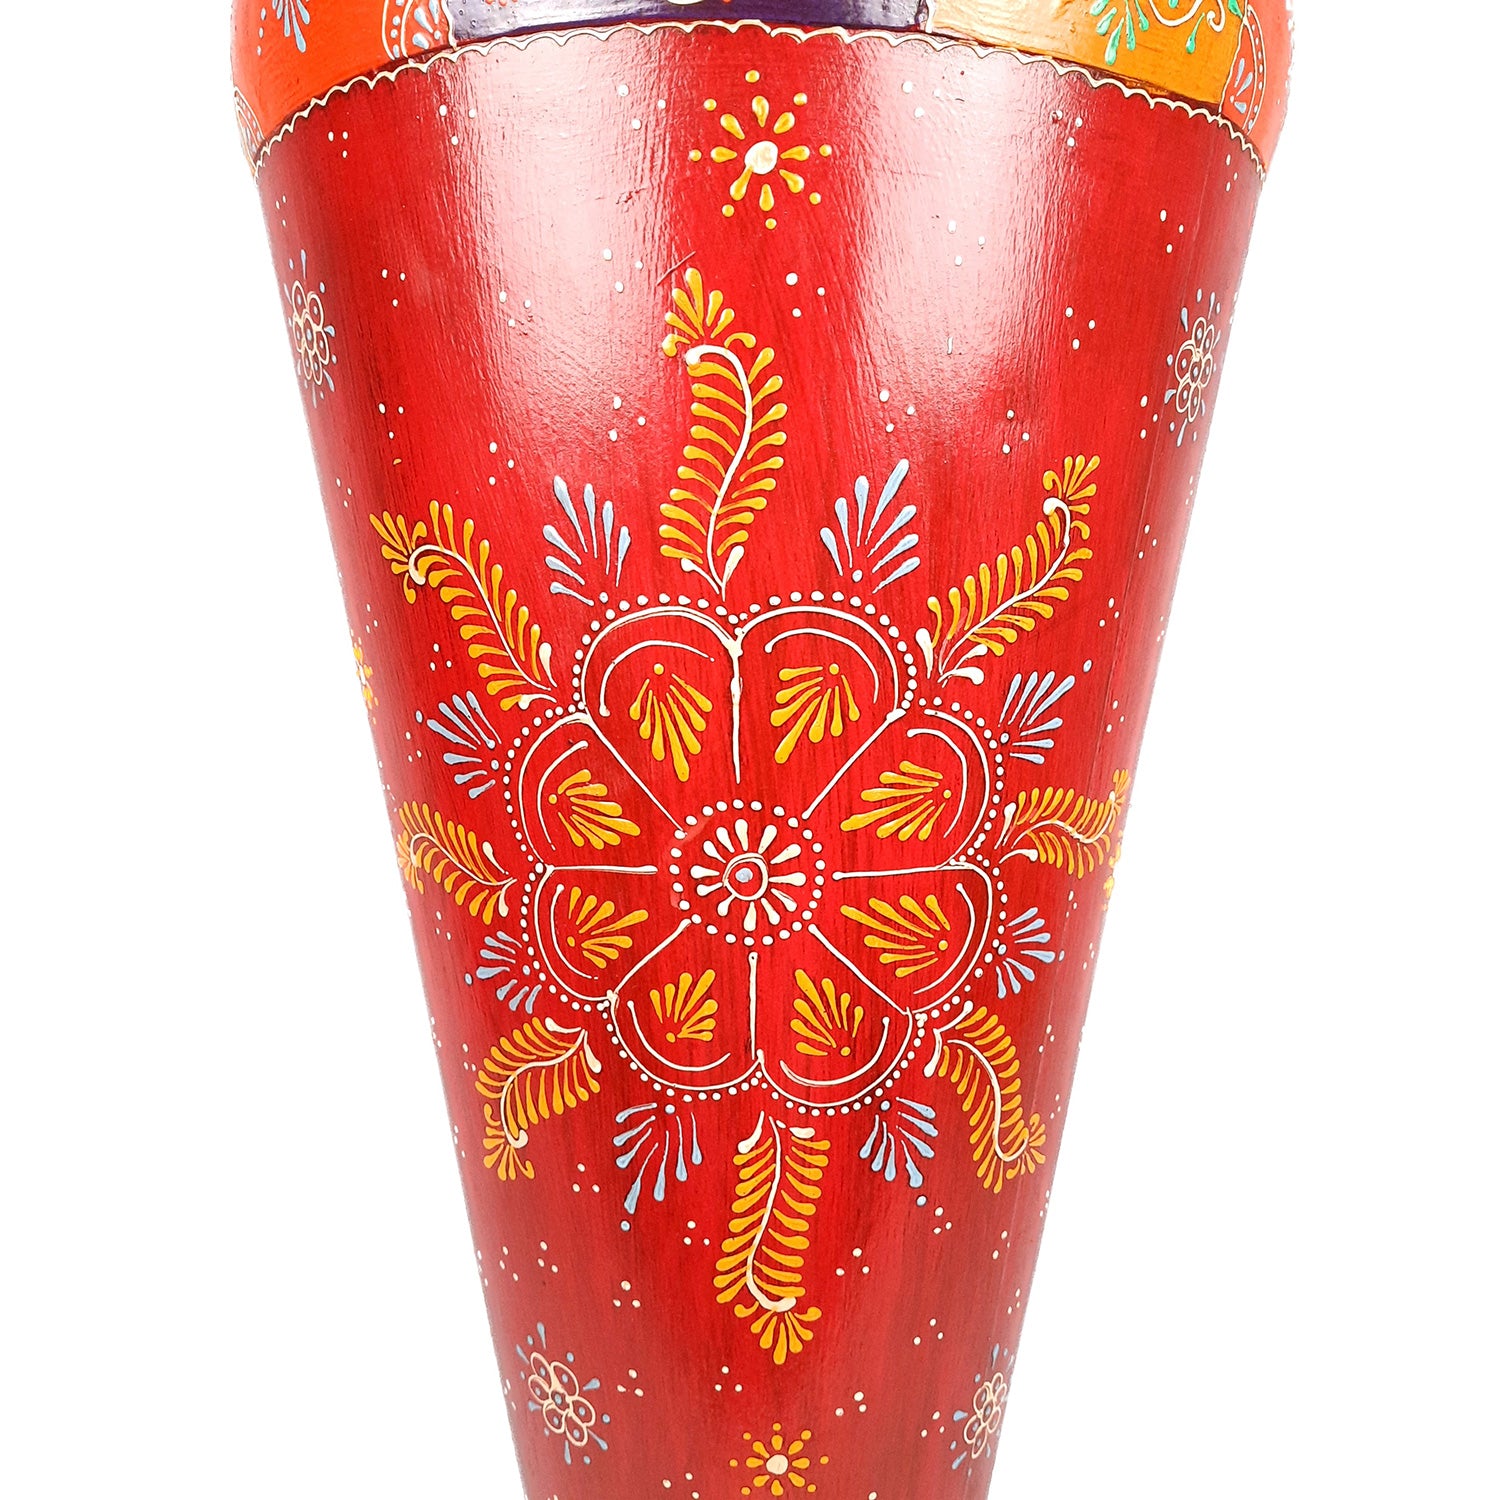 Decorative Vase | Big Flower Pots for Home Decor & Gifts - 37 Inch- Apkamart